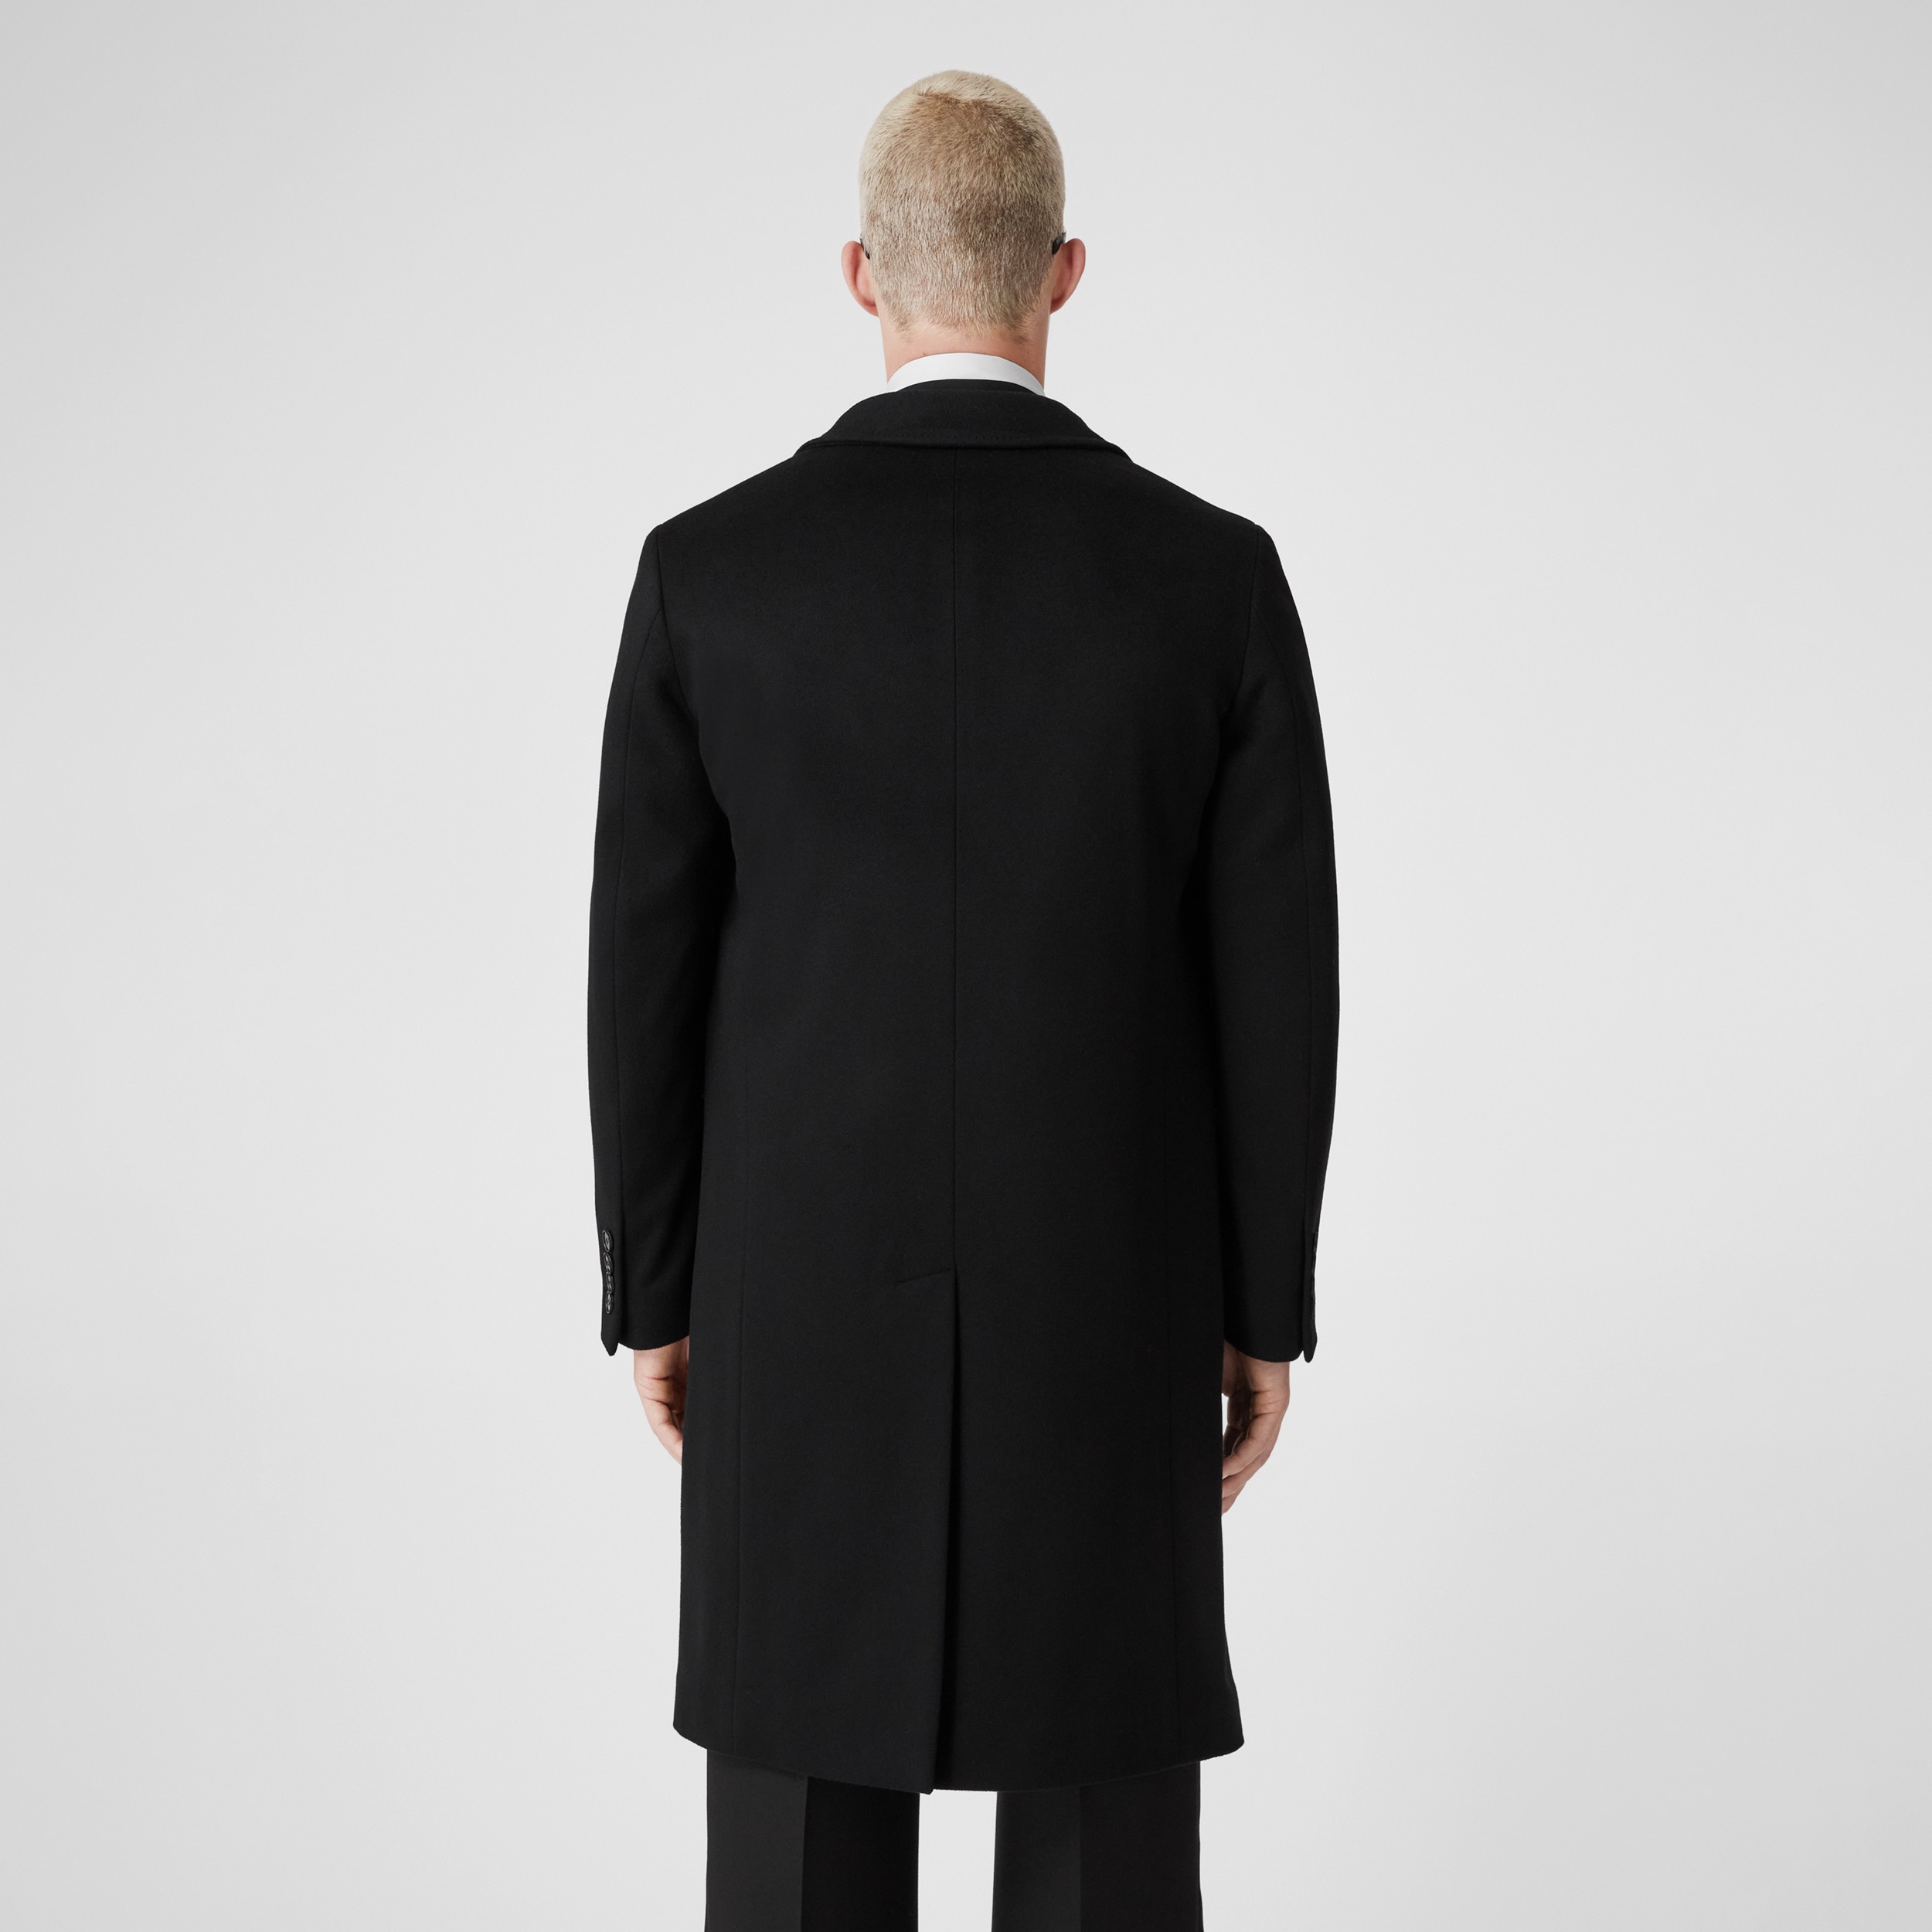 Tagliatore Wolle Wolle mantel in Schwarz für Herren Herren Bekleidung Mäntel 